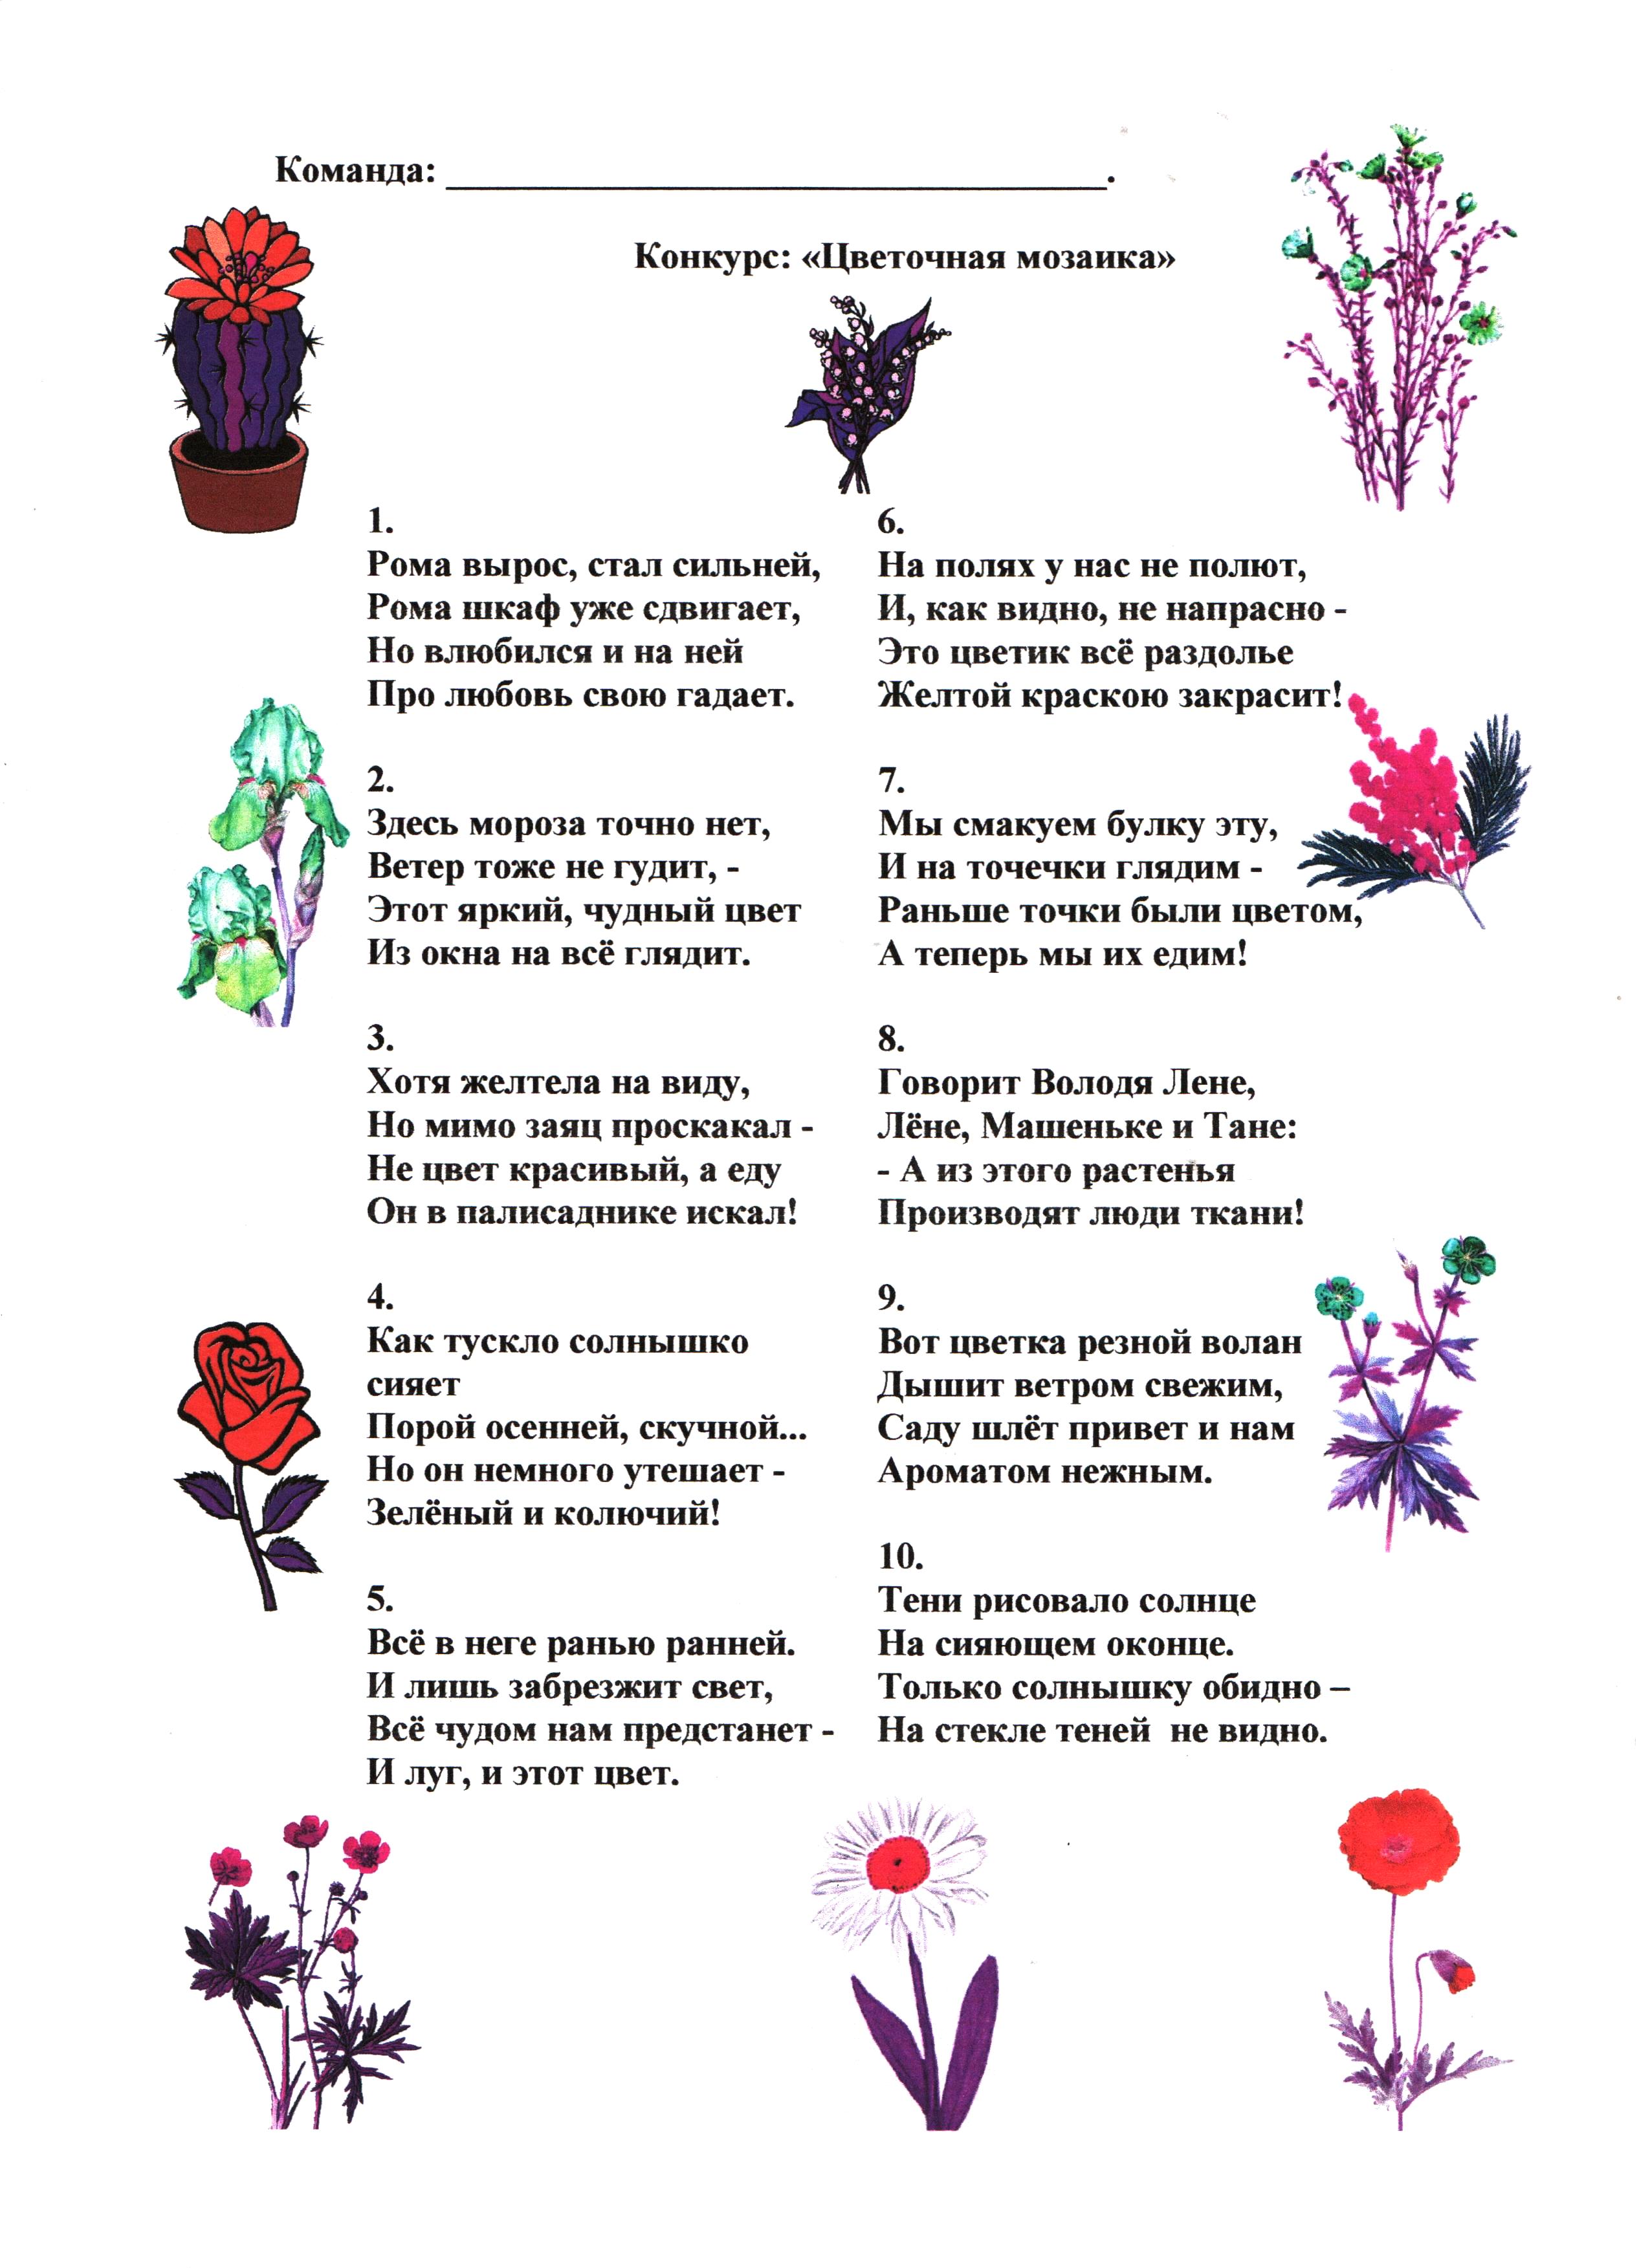 Загадка для детей ответ цветок. Загадки для детей 7 -8 с ответами про растения. Загадки про цветы с прилагательными. Загадки про цветы. Загадки про цветы для детей.